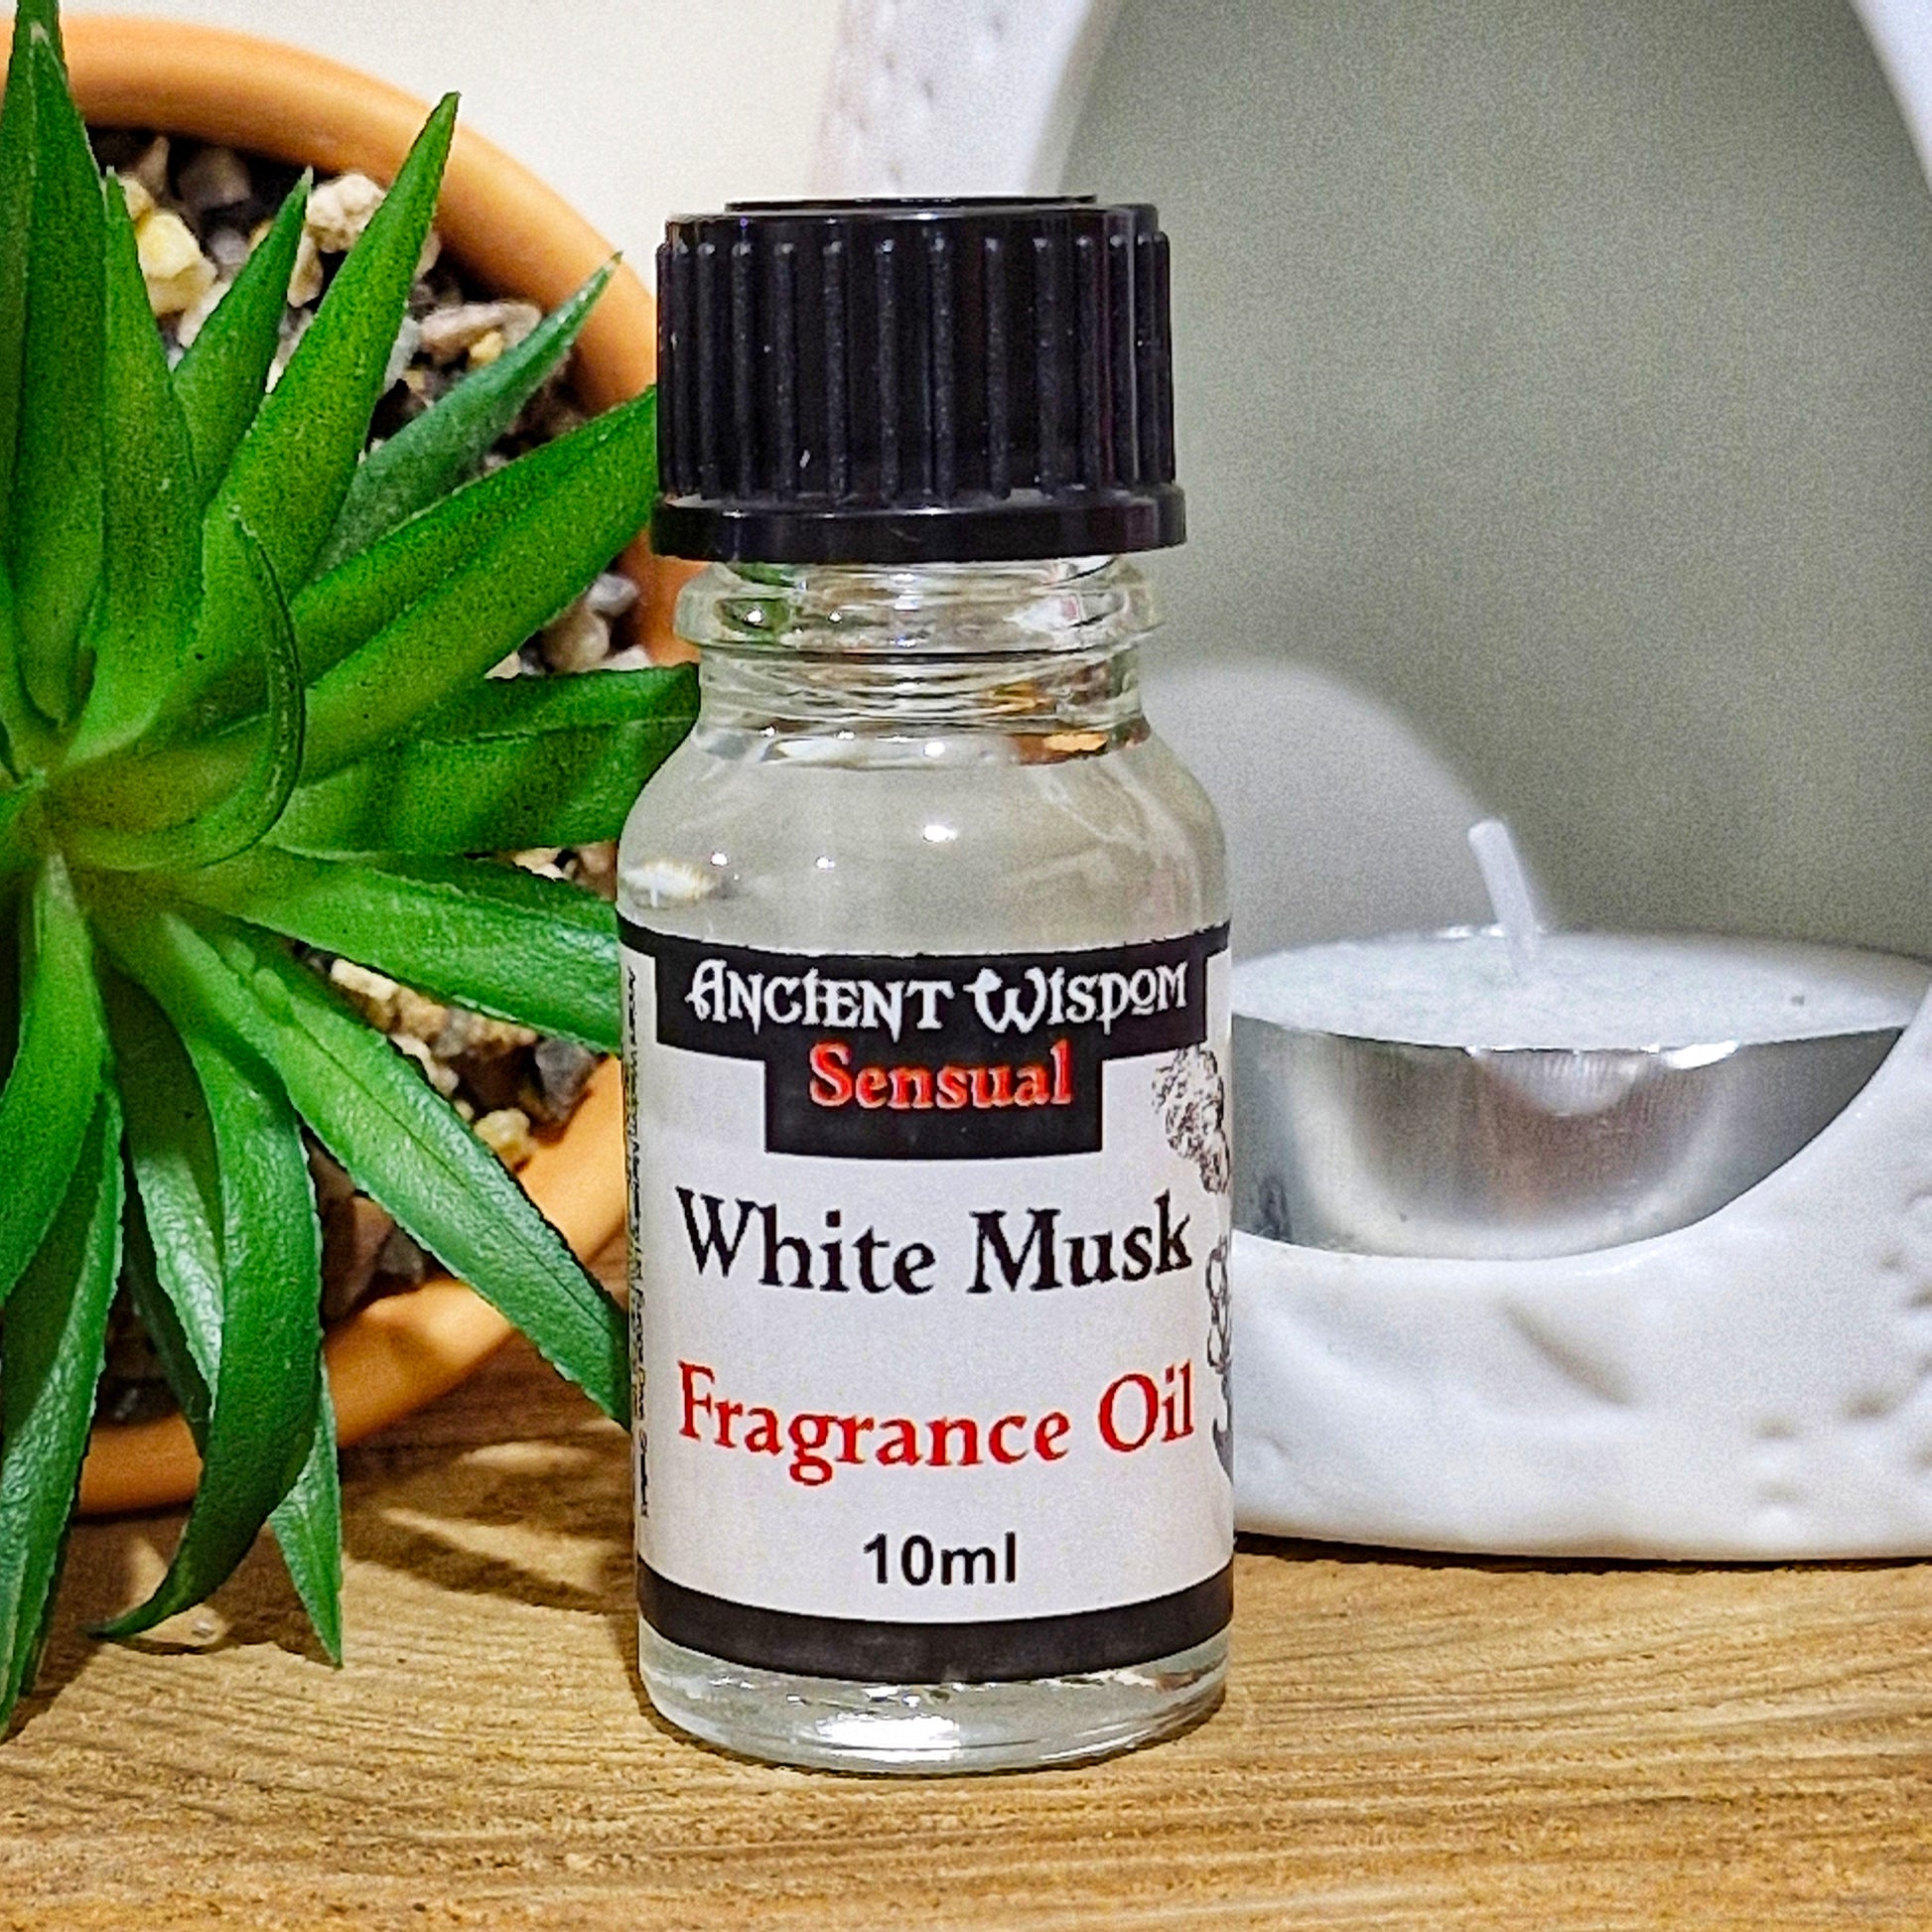 A 10ml bottle of white musk fragrance oil 